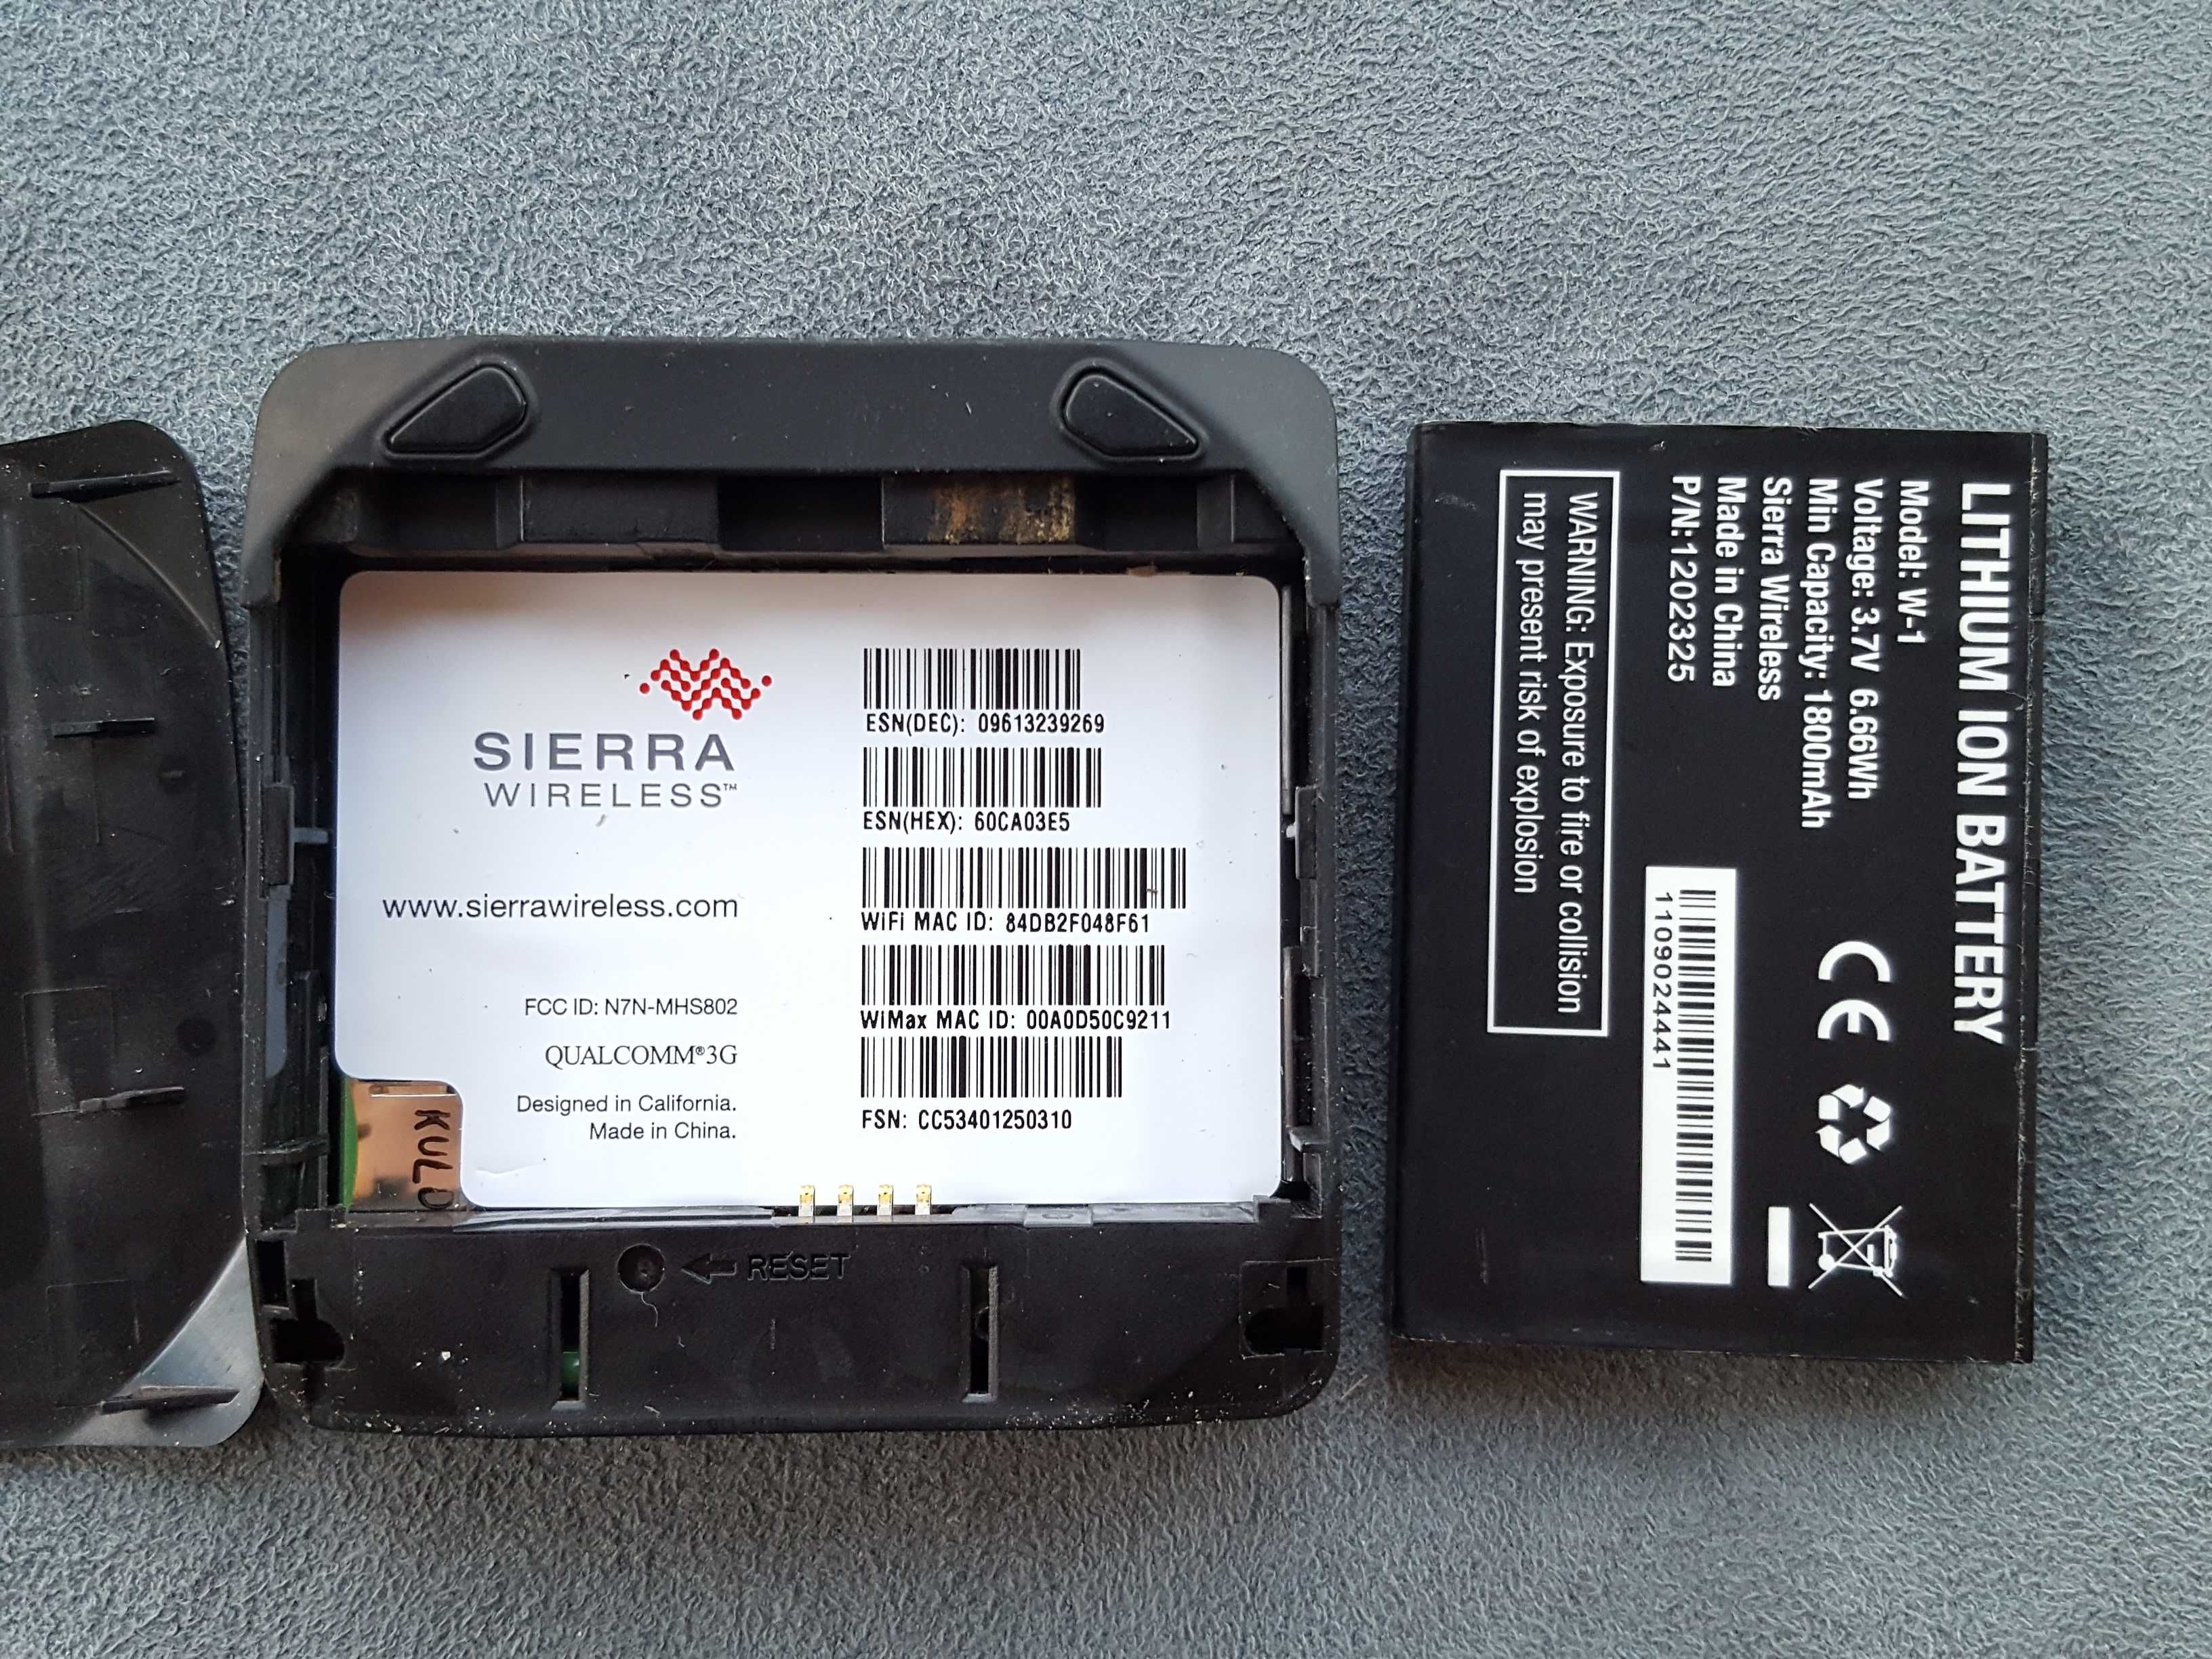 Sierra Wireles Sprint 3G 4G нерабочий